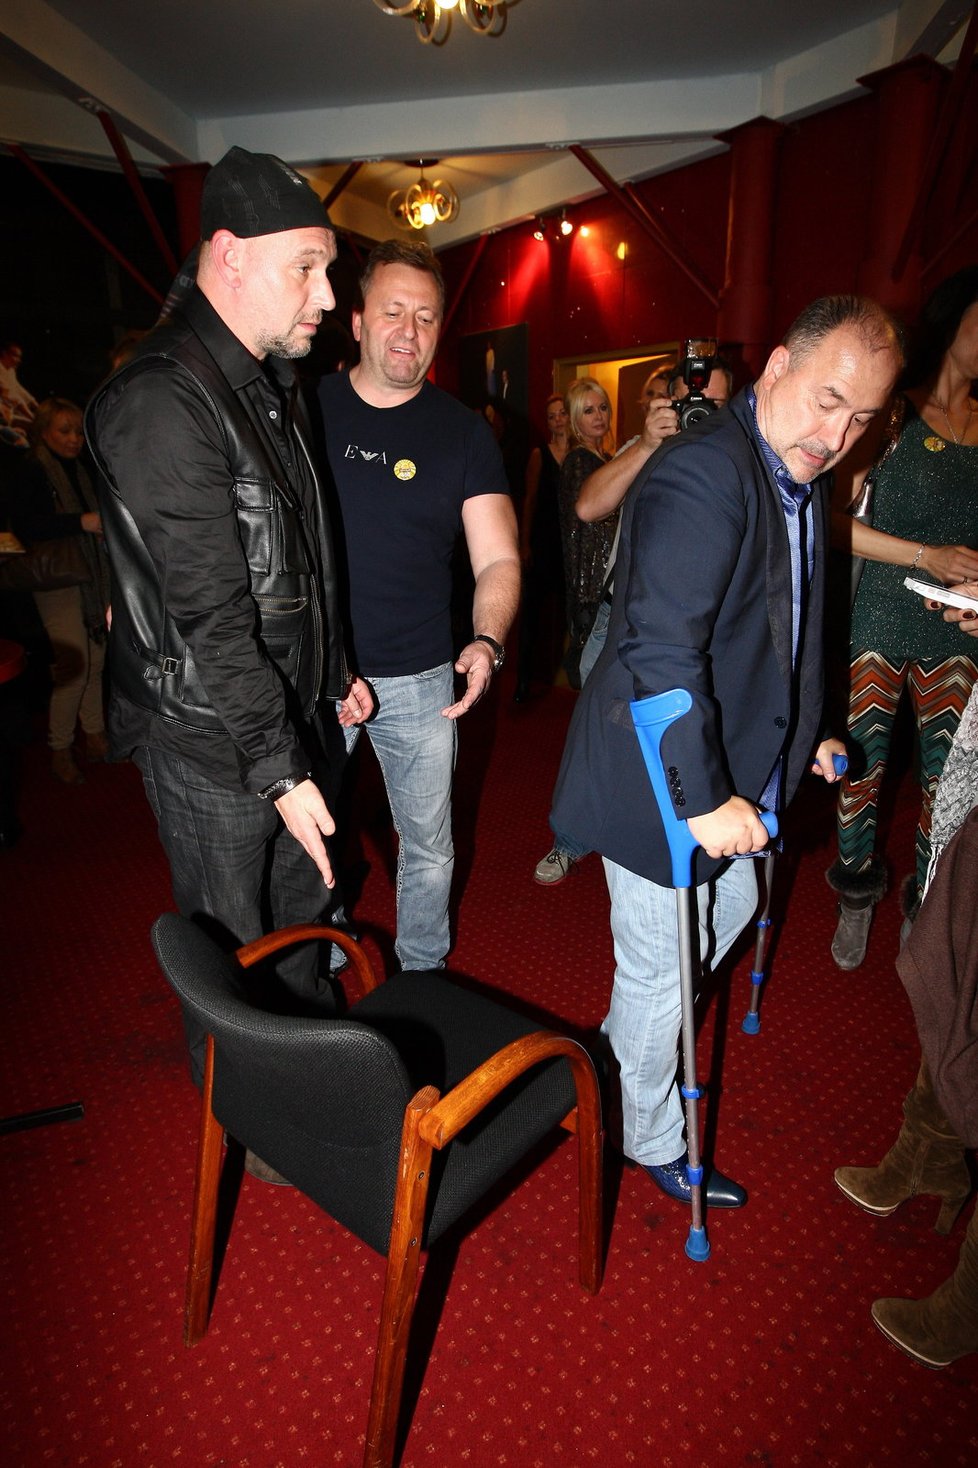 Fotograf Jakub Ludvík přinesl Michalu Davidovi židli, aby se mohl posadit.